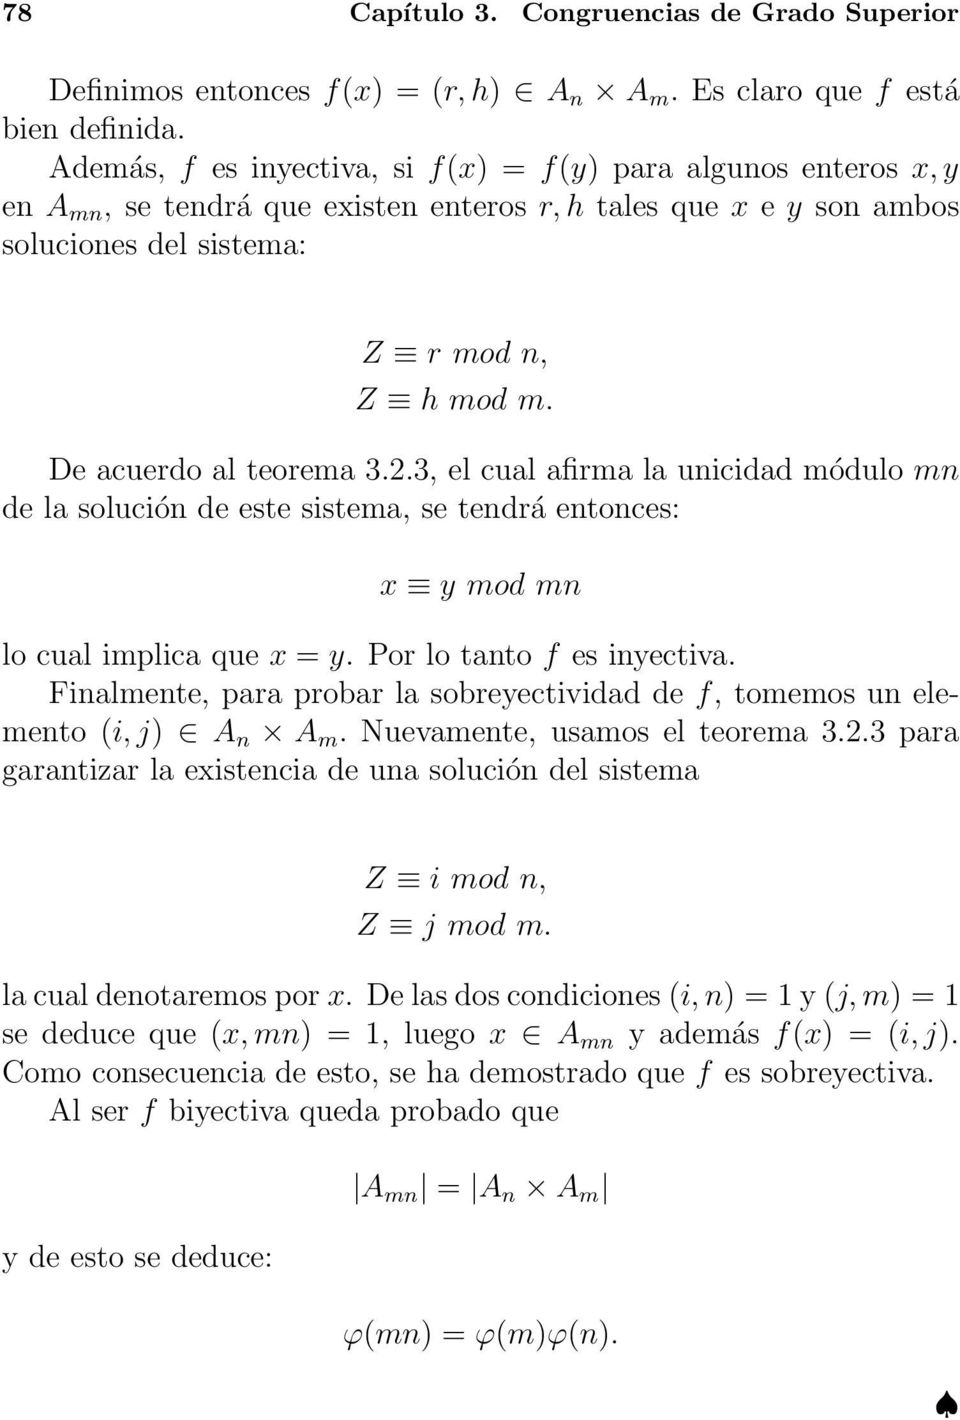 De acuerdo al teorema 3.2.3, el cual afirma la unicidad módulo mn de la solución de este sistema, se tendrá entonces: x y mod mn lo cual implica que x = y. Por lo tanto f es inyectiva.